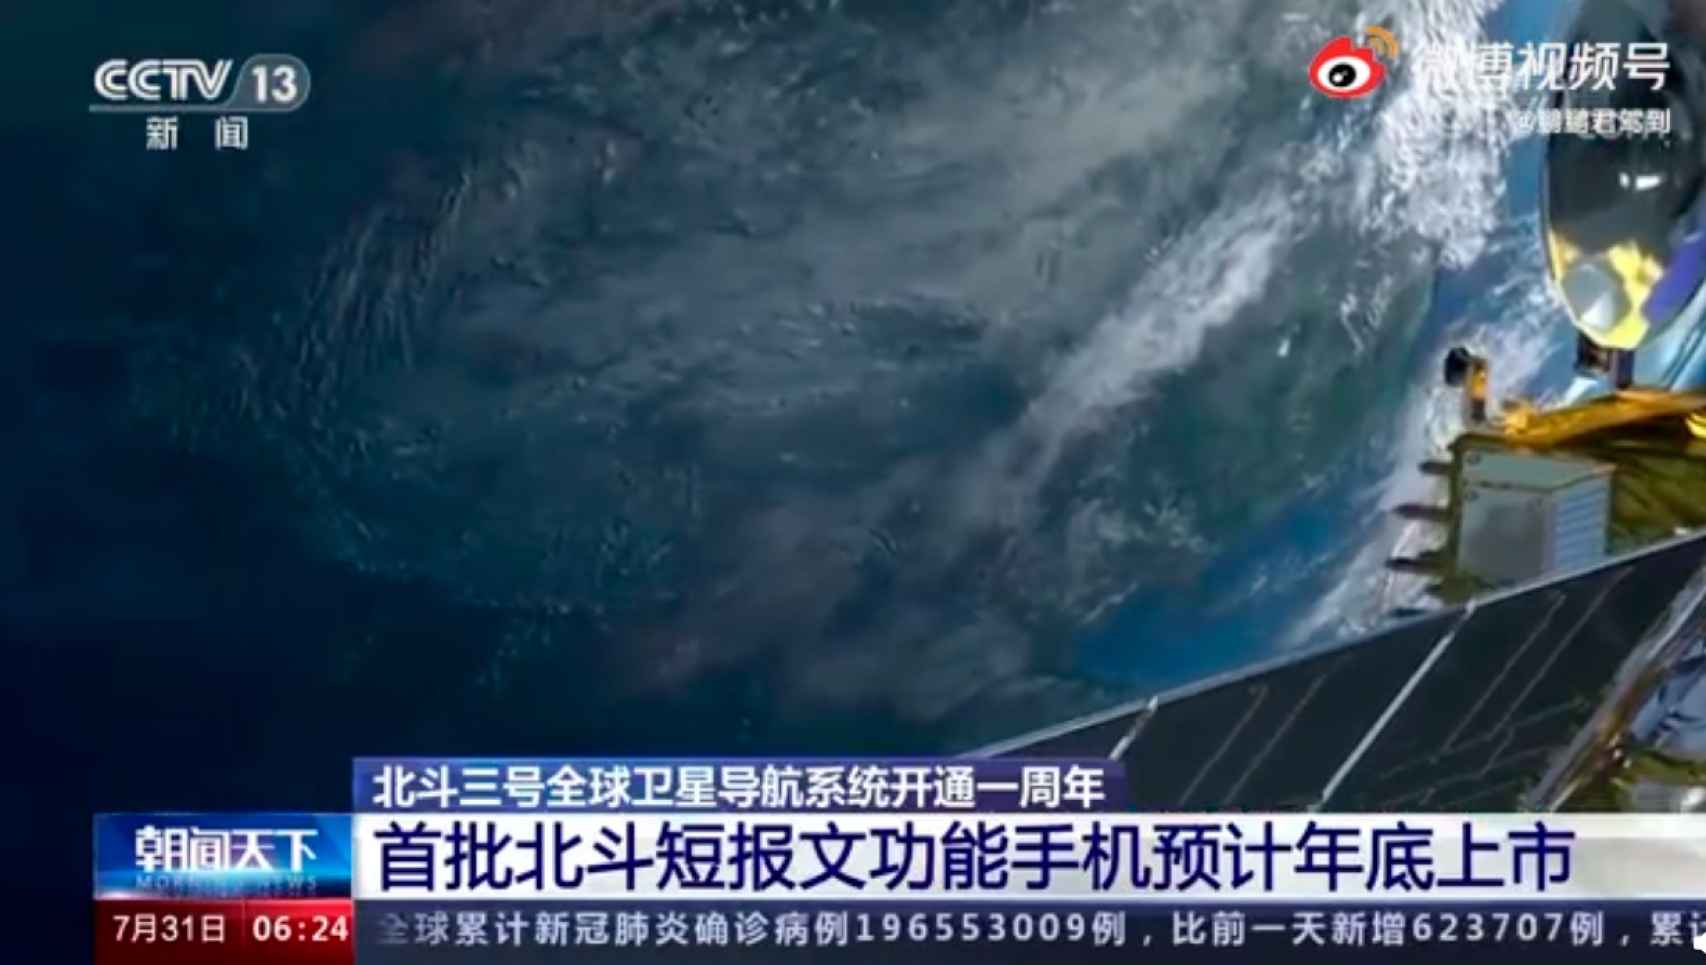 Fotograma de la noticia en el canal chino CCTV 13